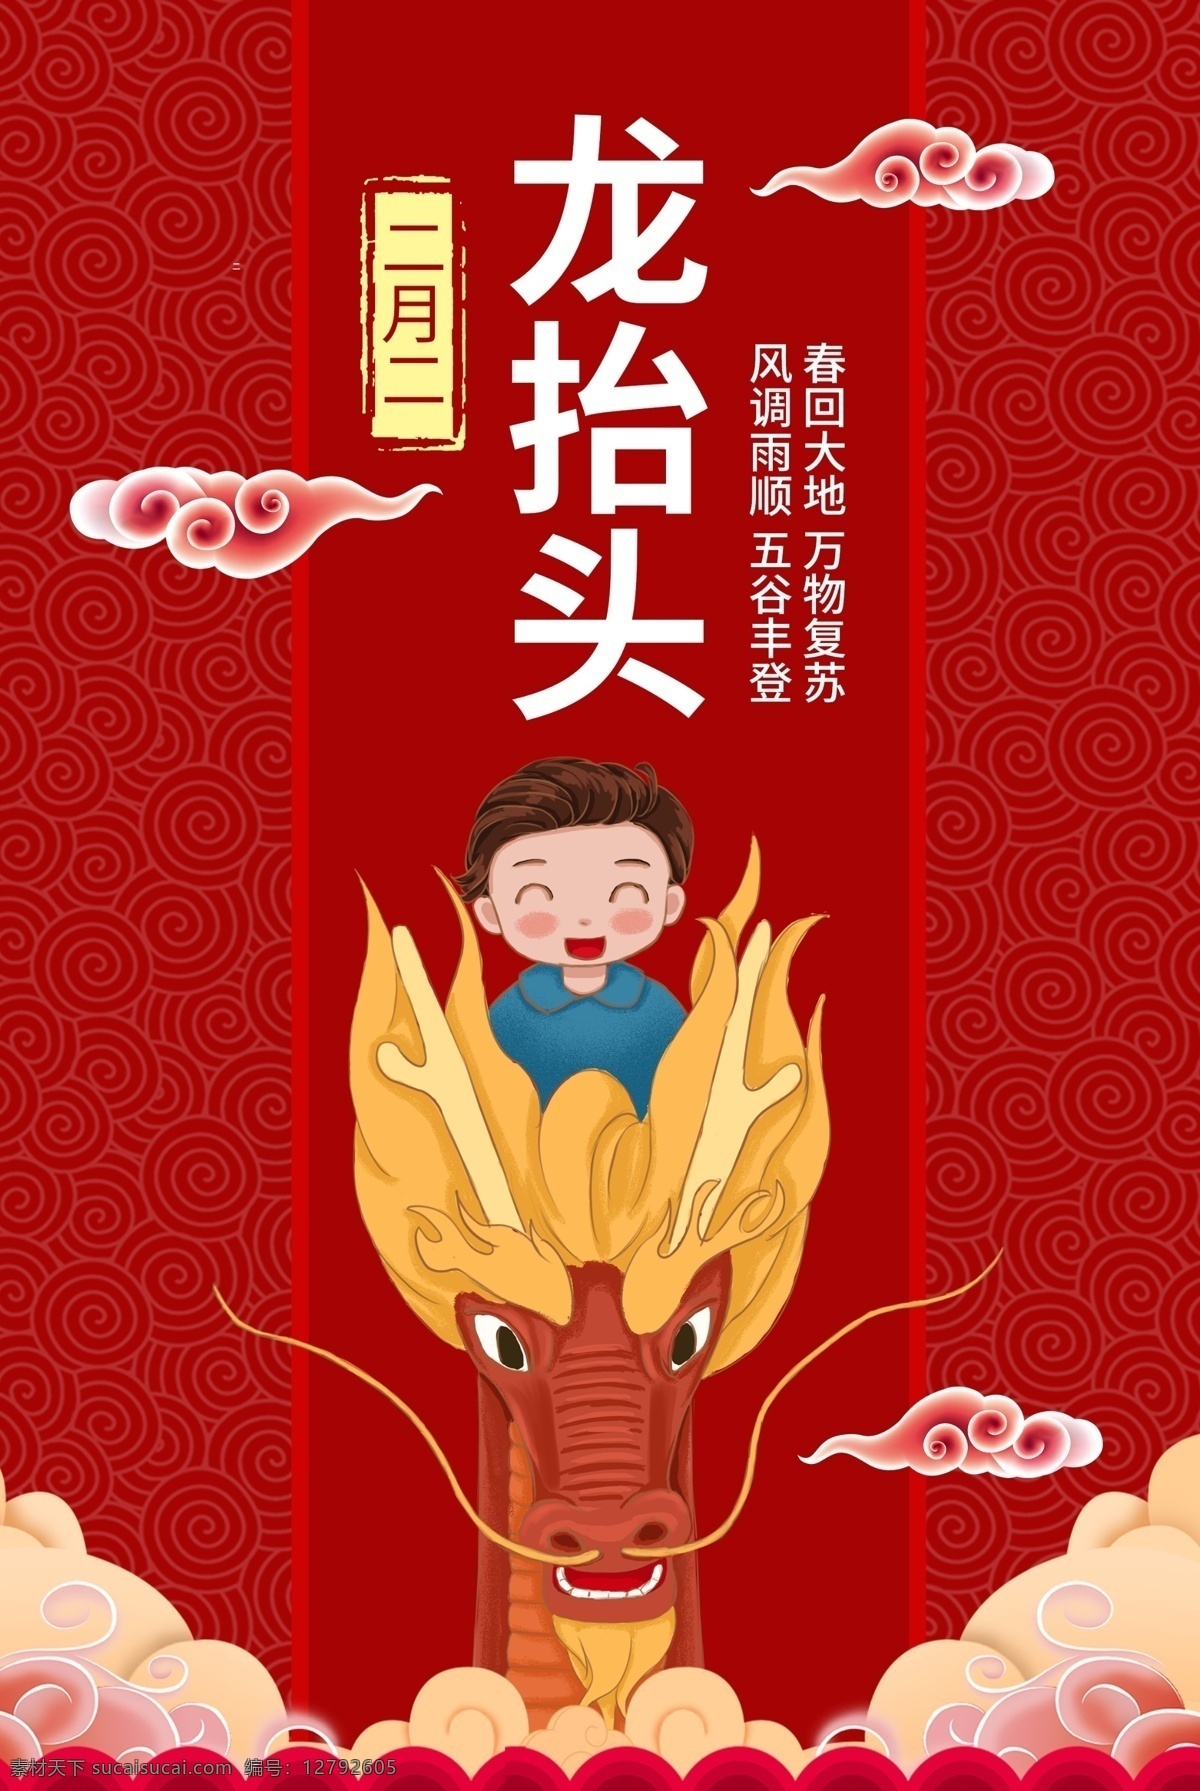 二月 二龙 抬头 手绘 龙头 儿童 红色 海 二月二 龙抬头 节日 传统节日 海报 节日文化